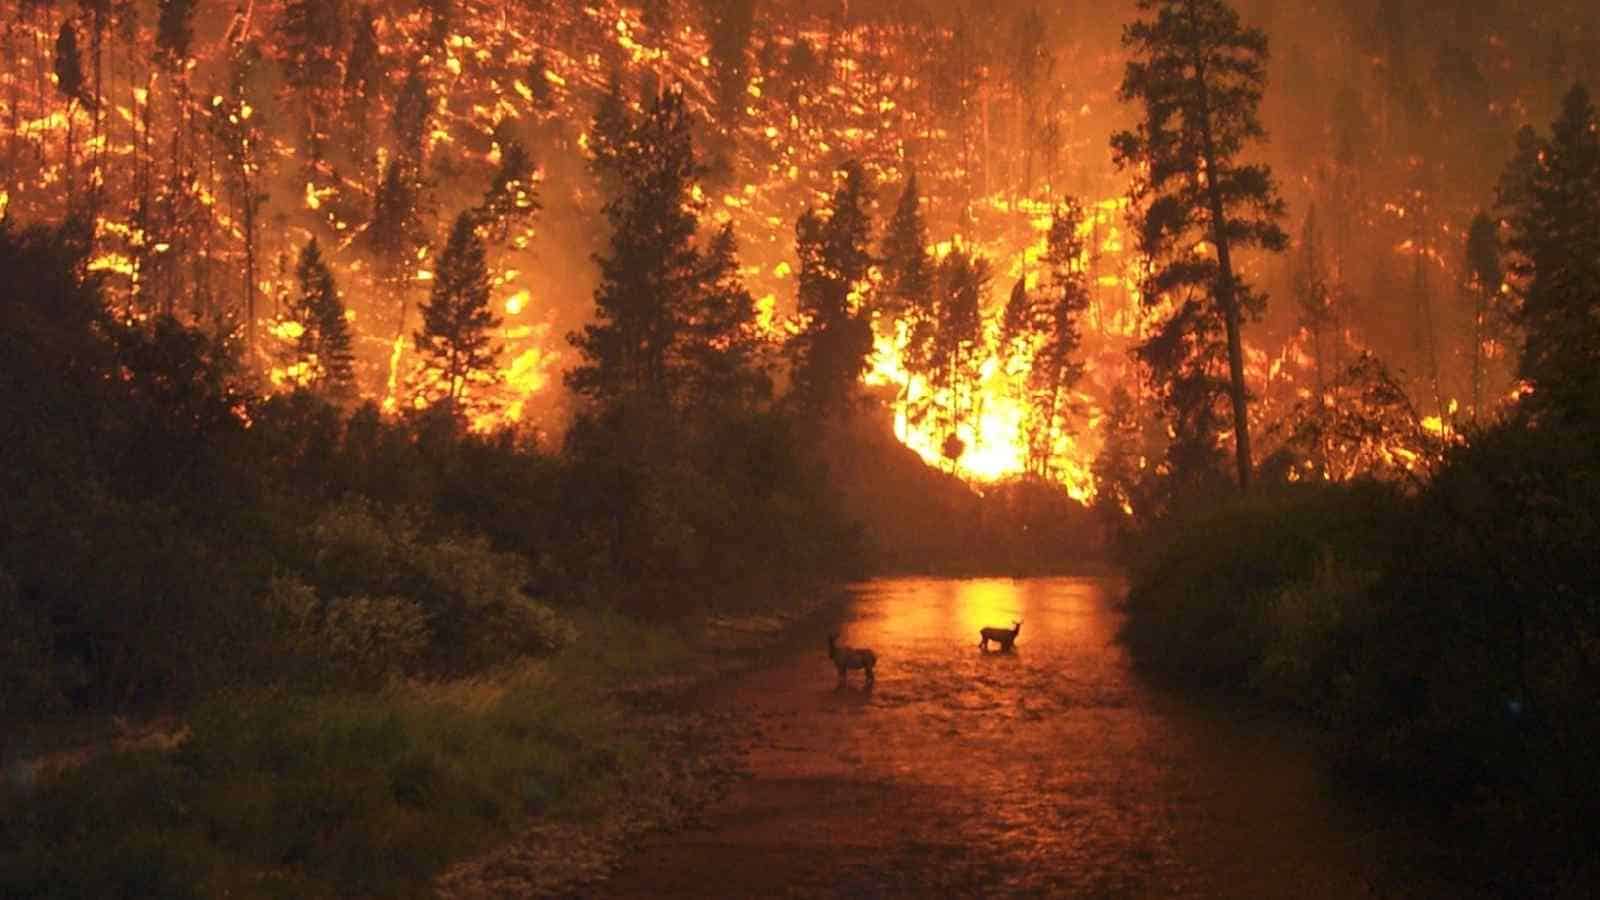 Gli incendi boschivi sono un pericolo comune per molti paesi, ma un team di scienziati ha sviluppato un AI che viene in nostro soccorso.